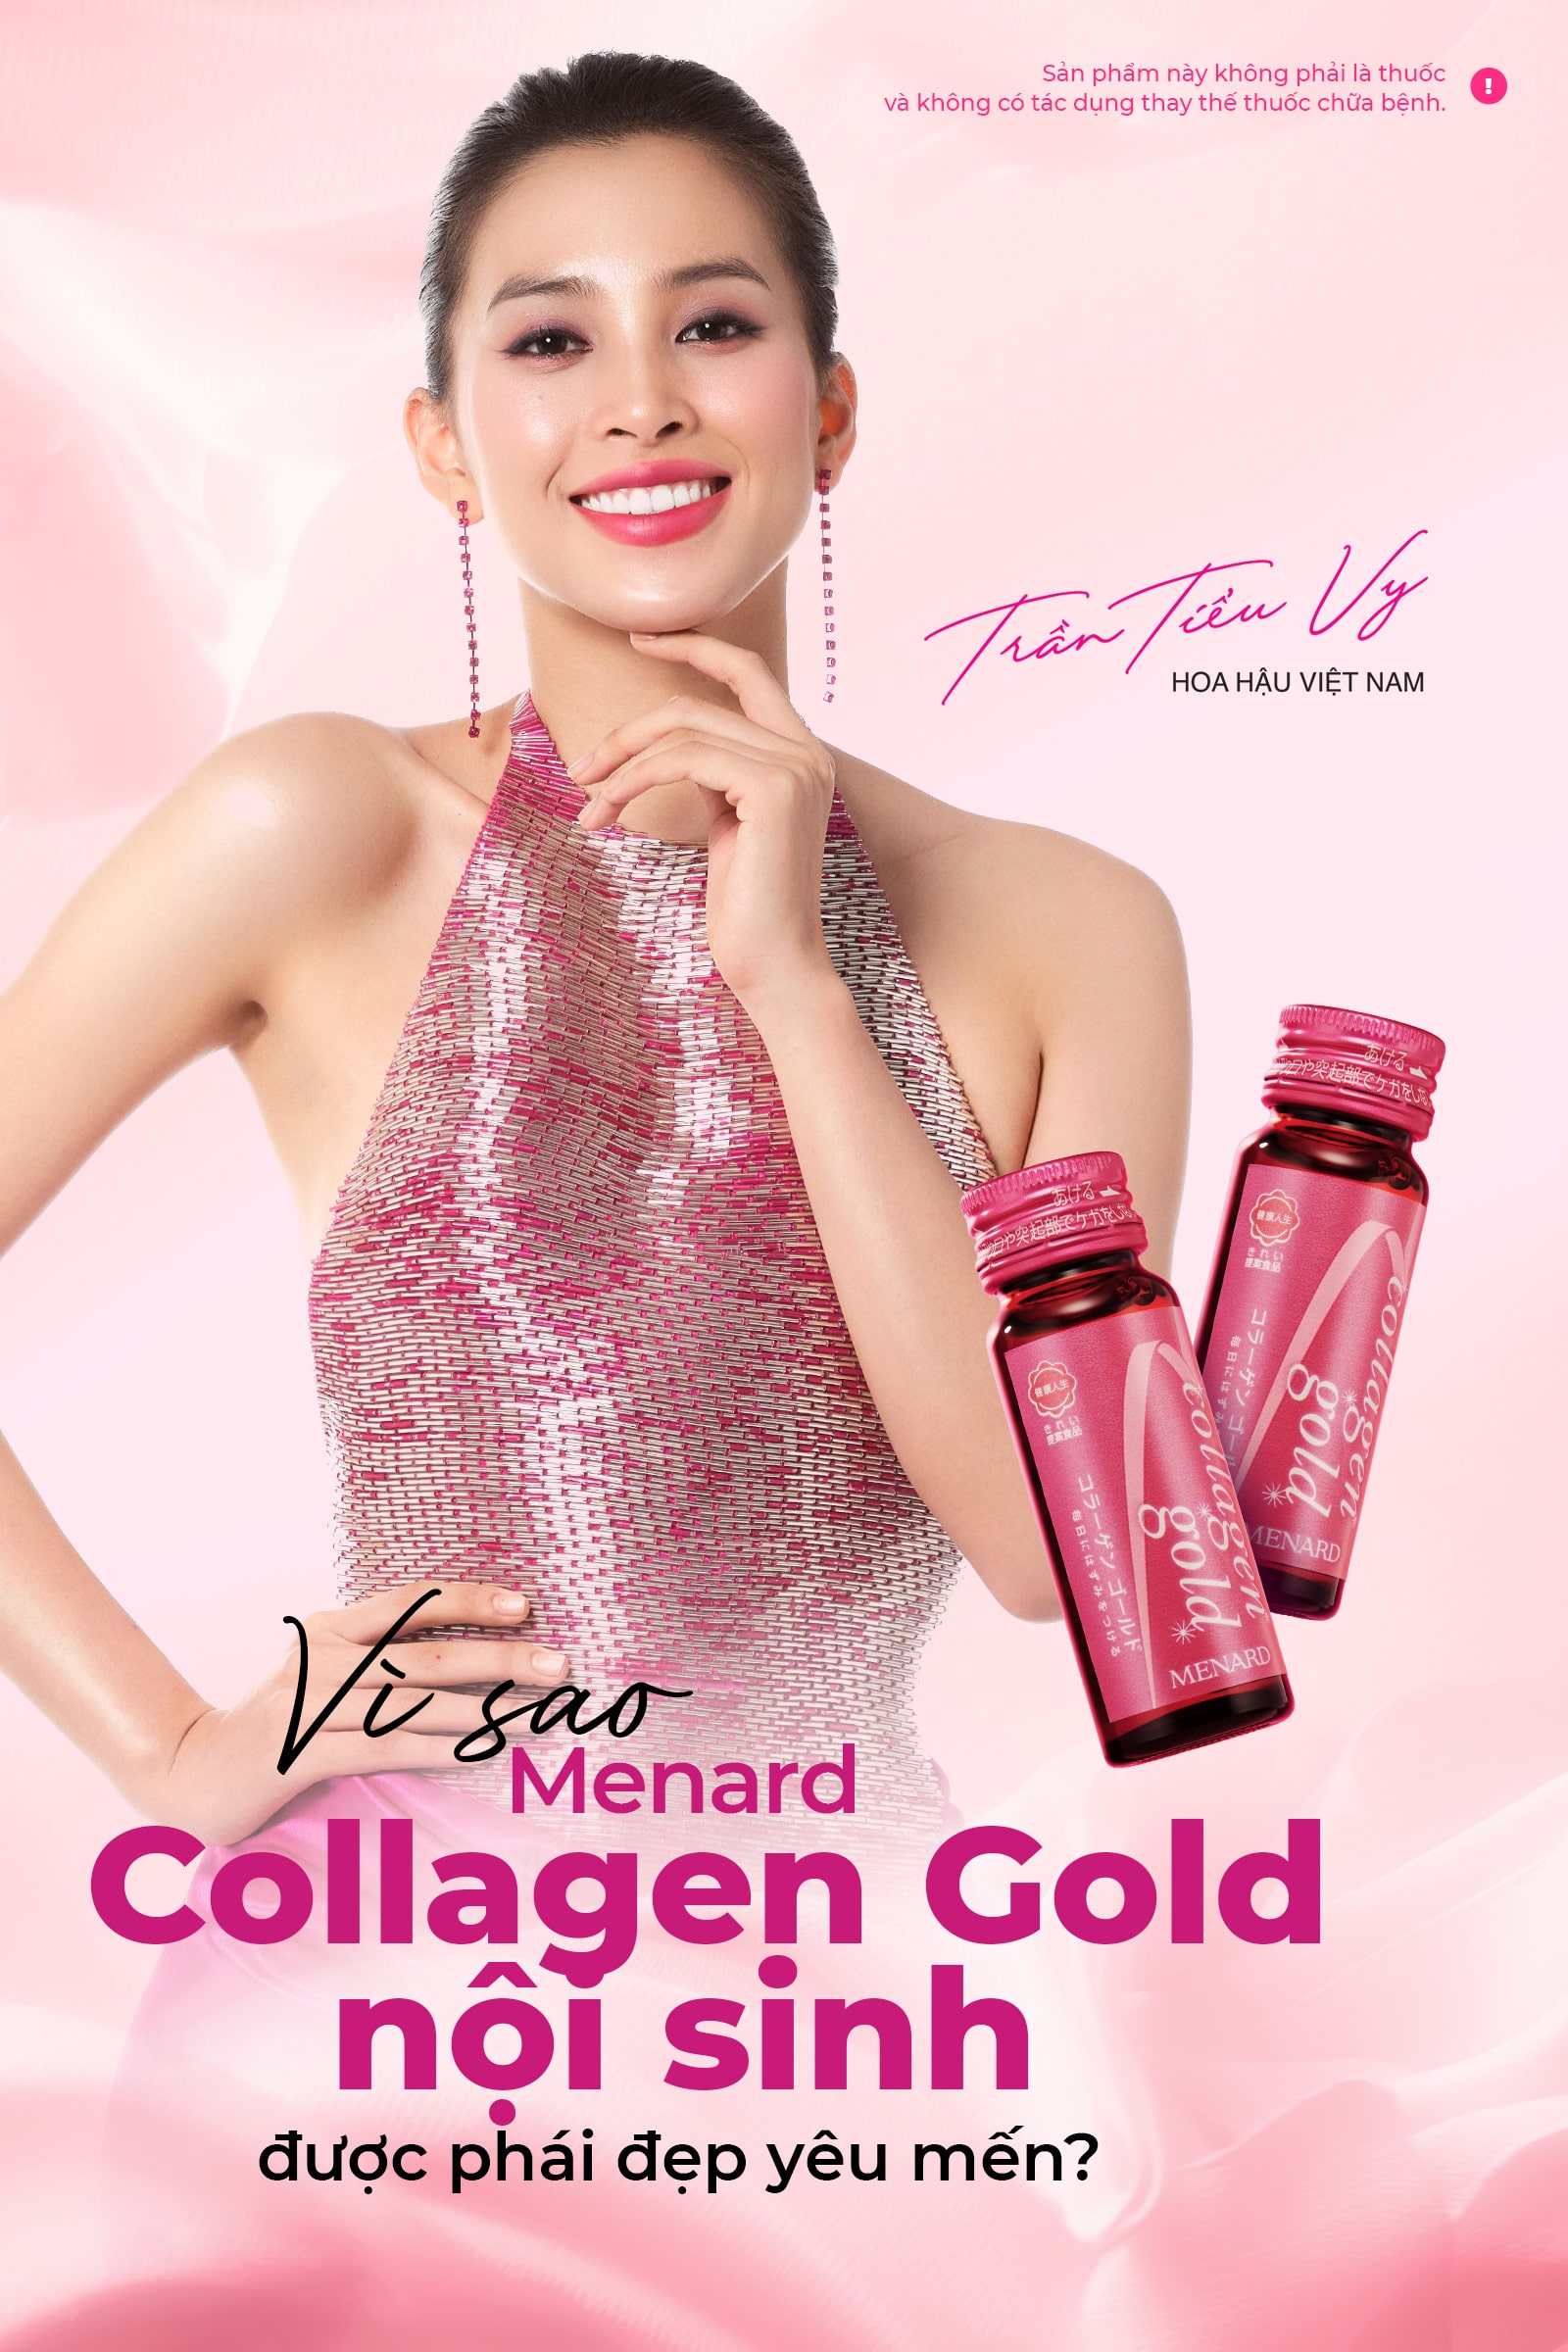 Collagen Gold của Menard có an toàn cho sức khỏe hay không?
